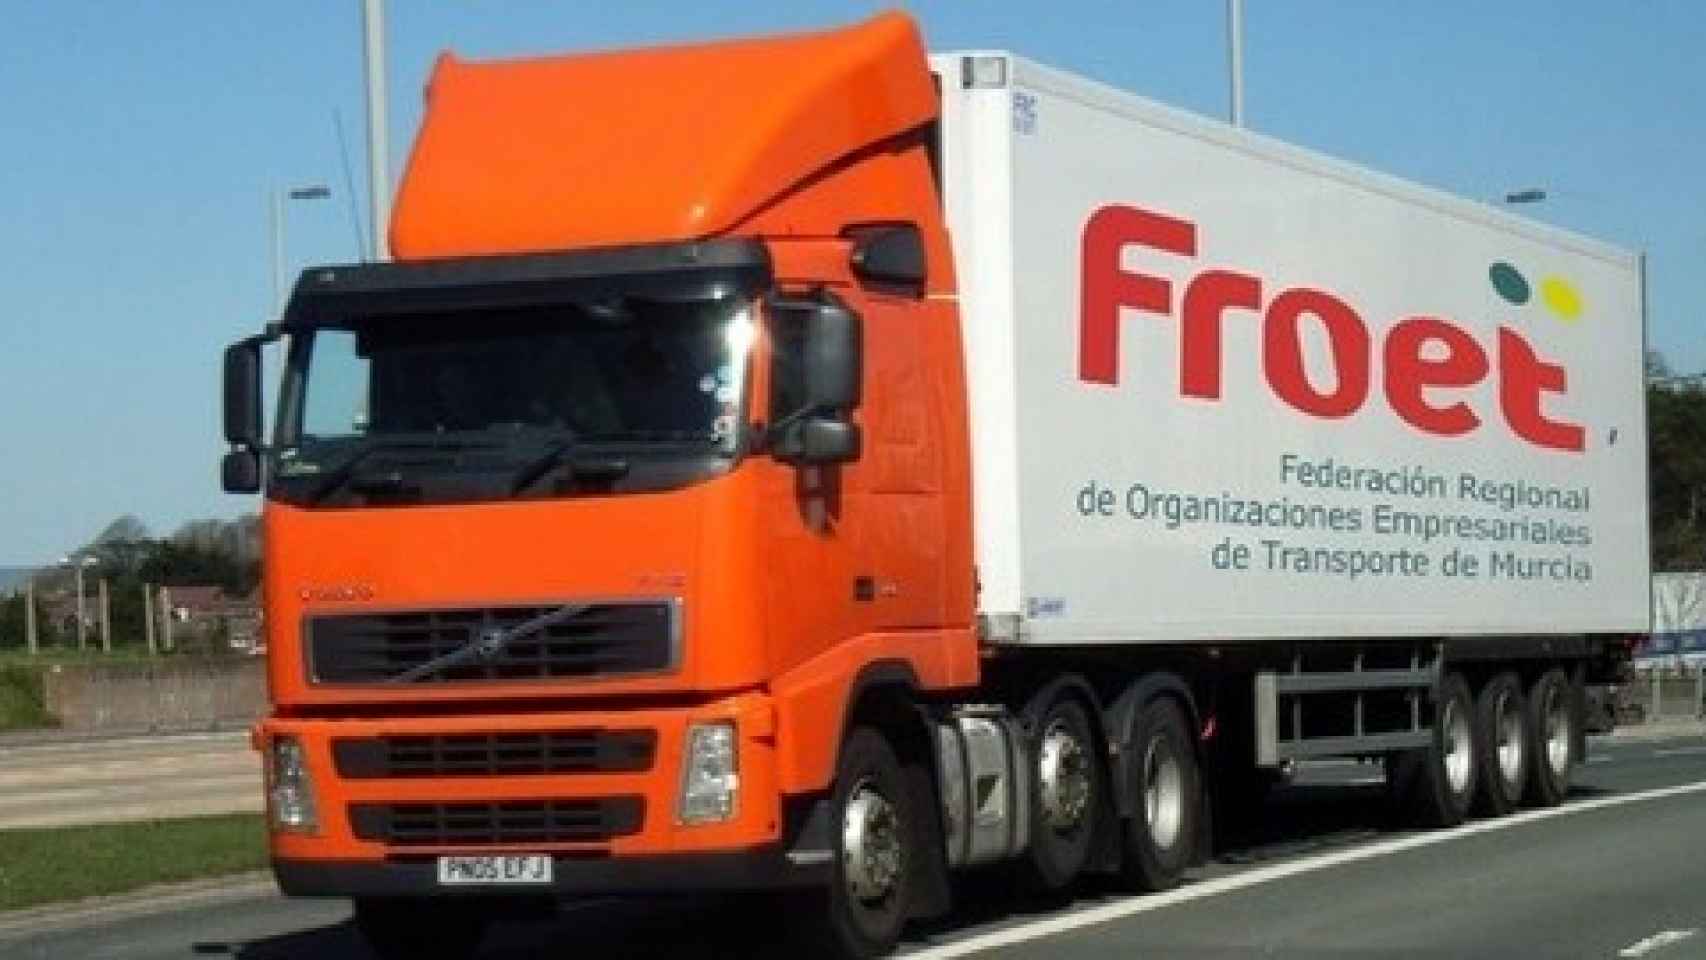 Un camión de la Federación Regional de Organizaciones Empresariales de Transporte de Murcia.